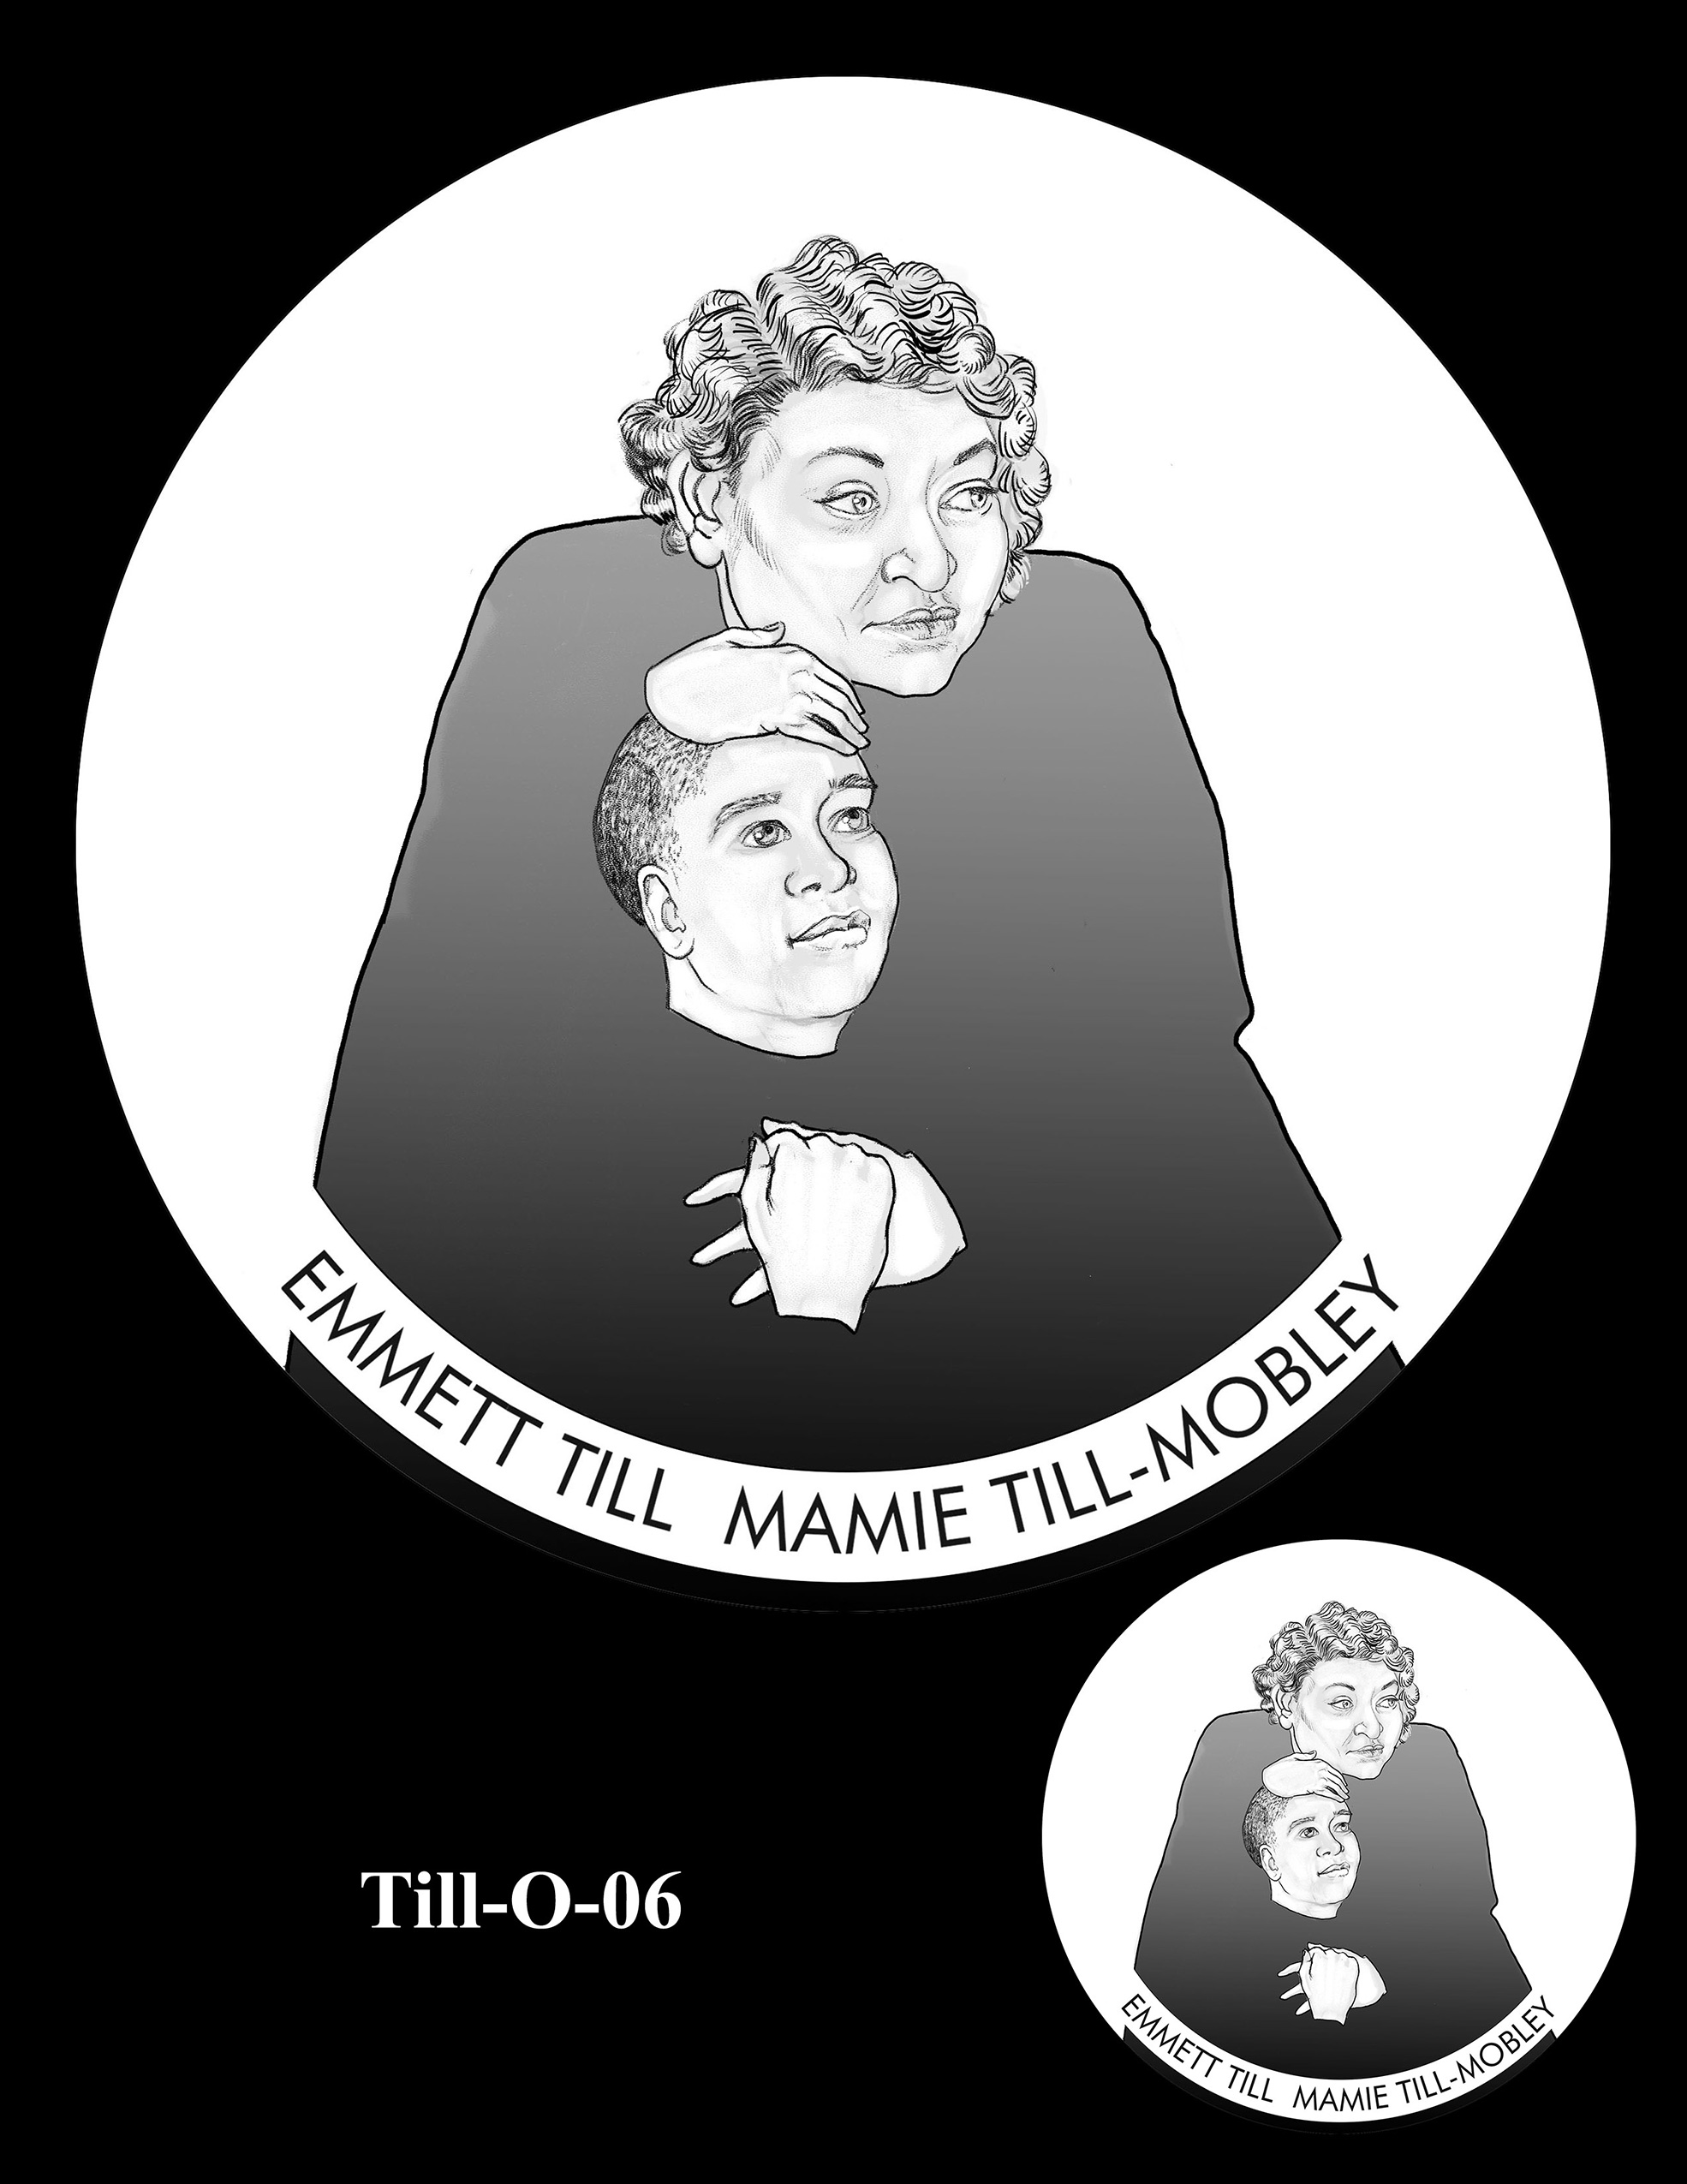 Till-O-06 -- Emmett Till and Mamie Till Mobley Congressional Gold Medal